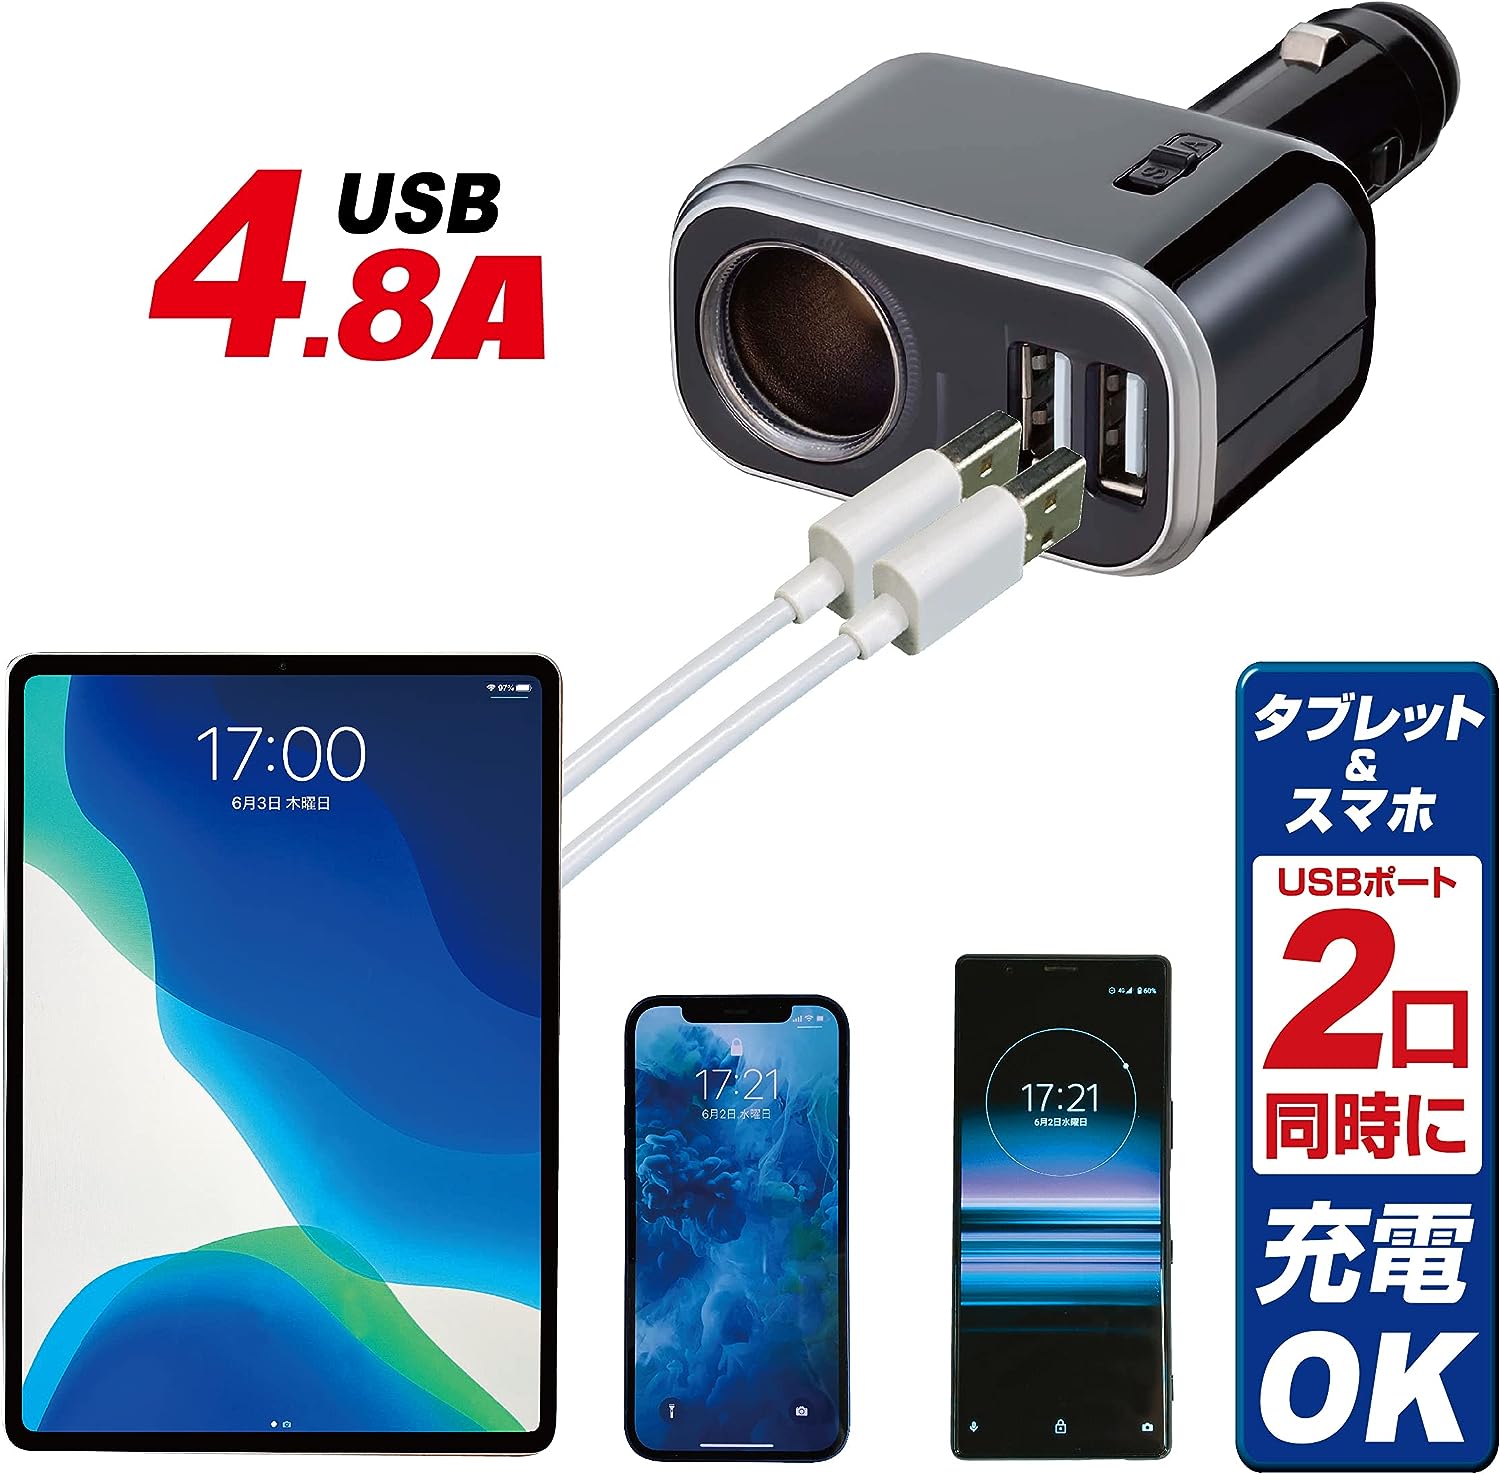 イルミソケットD1 USB 4.8A （ブラック） Fizz-990の商品画像